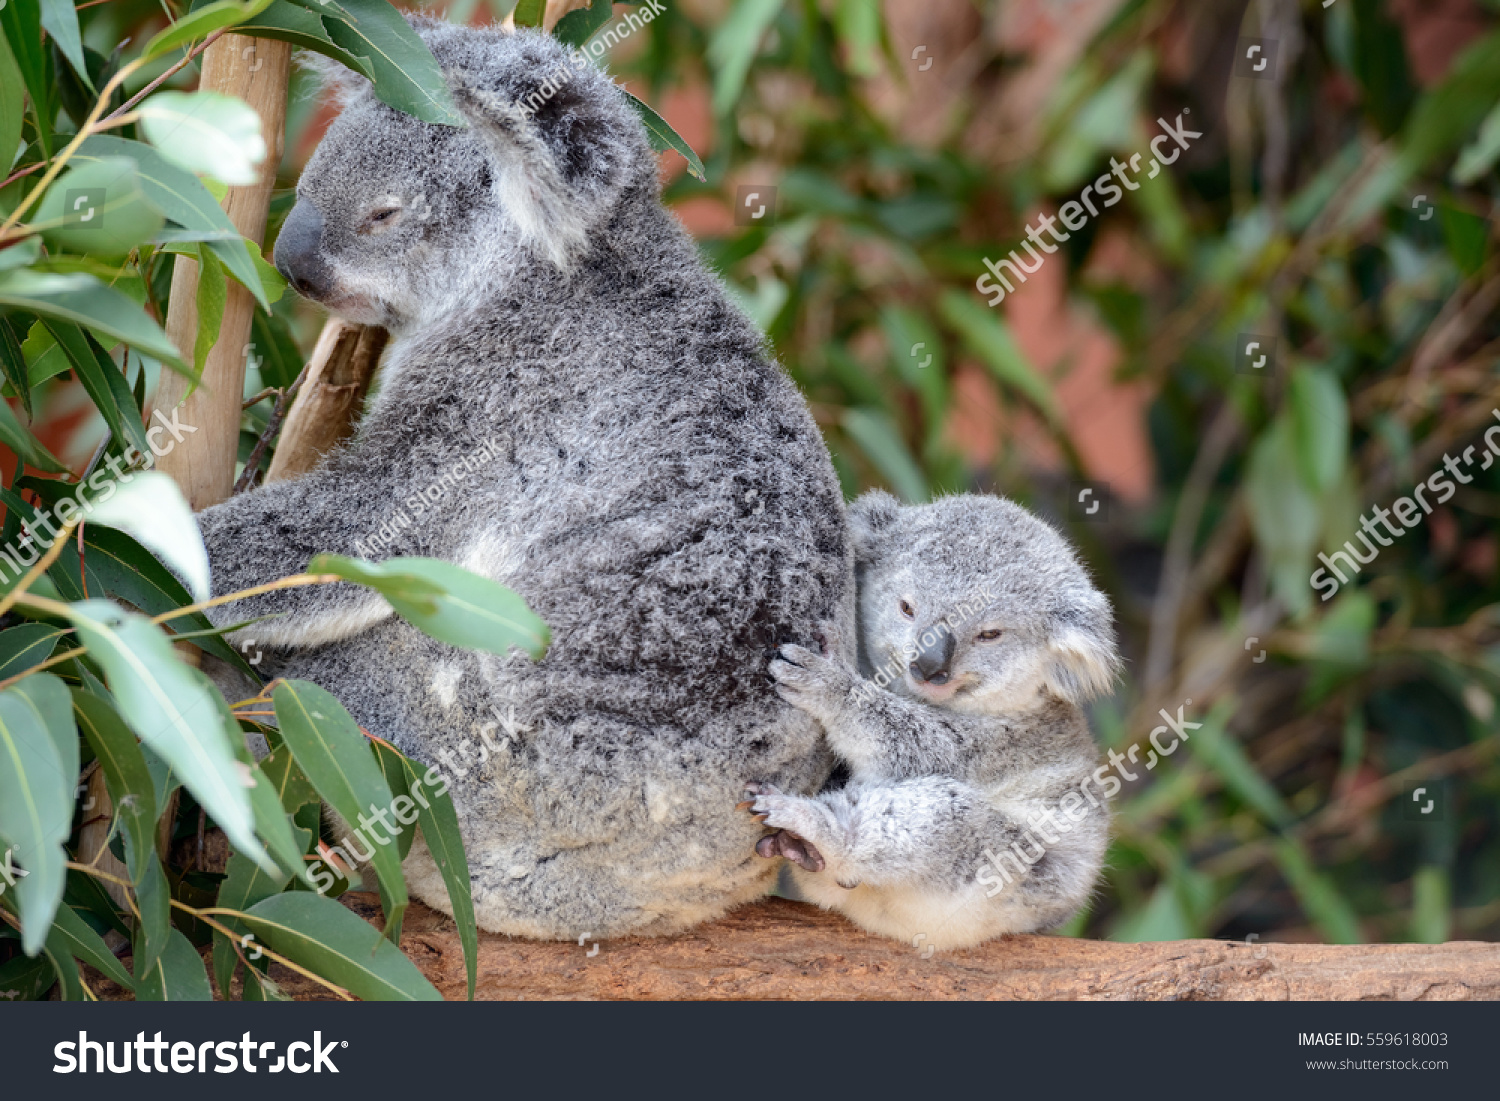 Female Koala Baby: Stockfotó (szerkesztés most) 559618003.